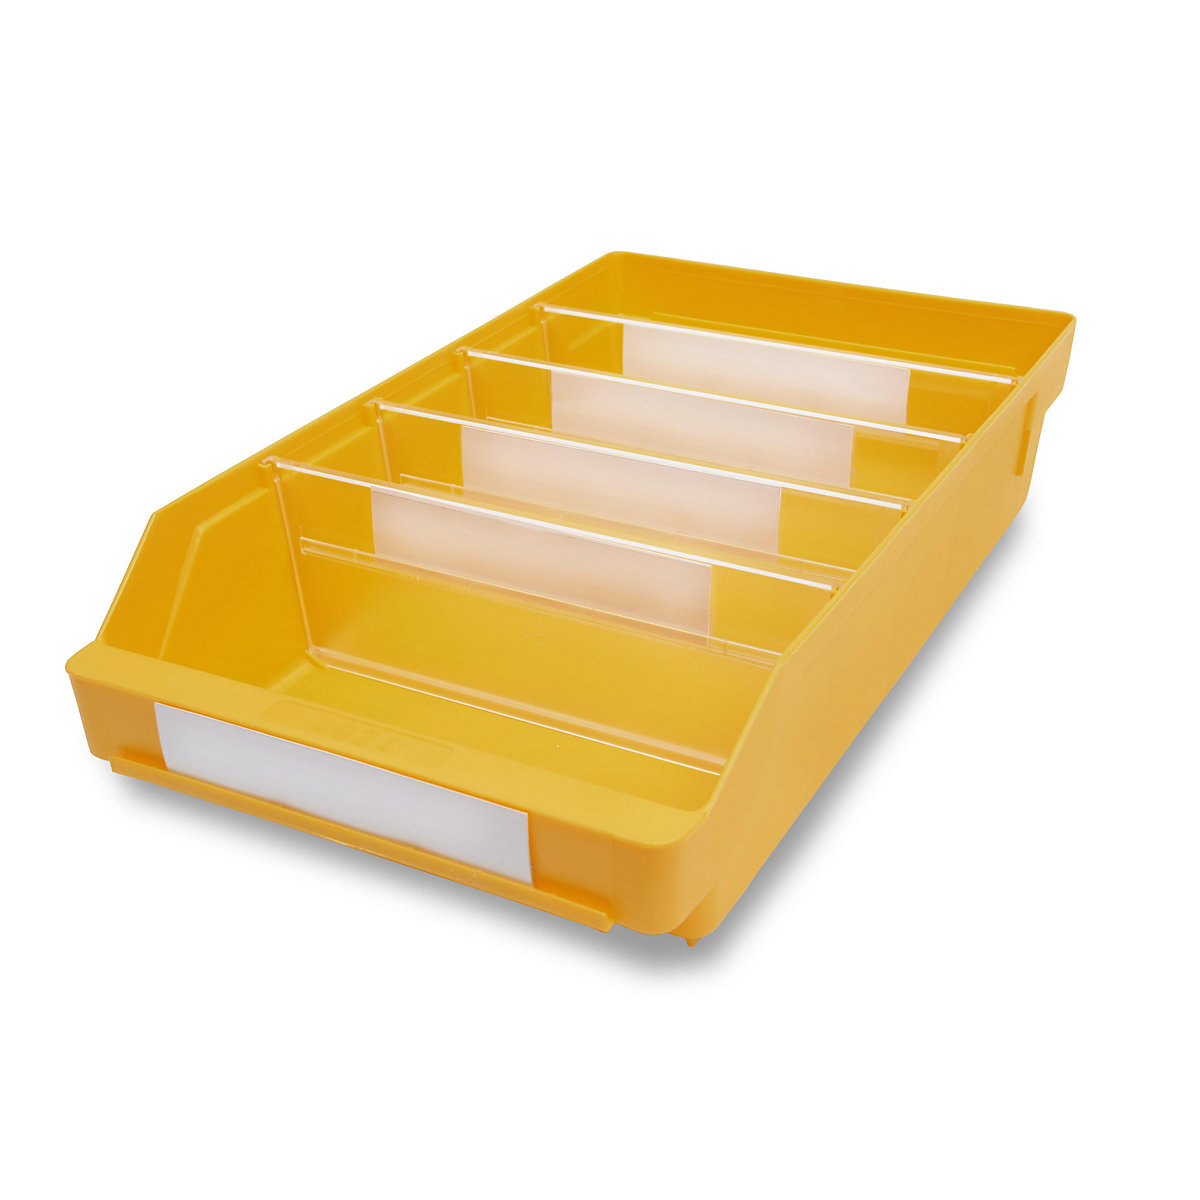 STEMO Regalkasten aus hochschlagfestem Polypropylen, gelb, LxBxH 400 x 240 x 95 mm, VE 15 Stk